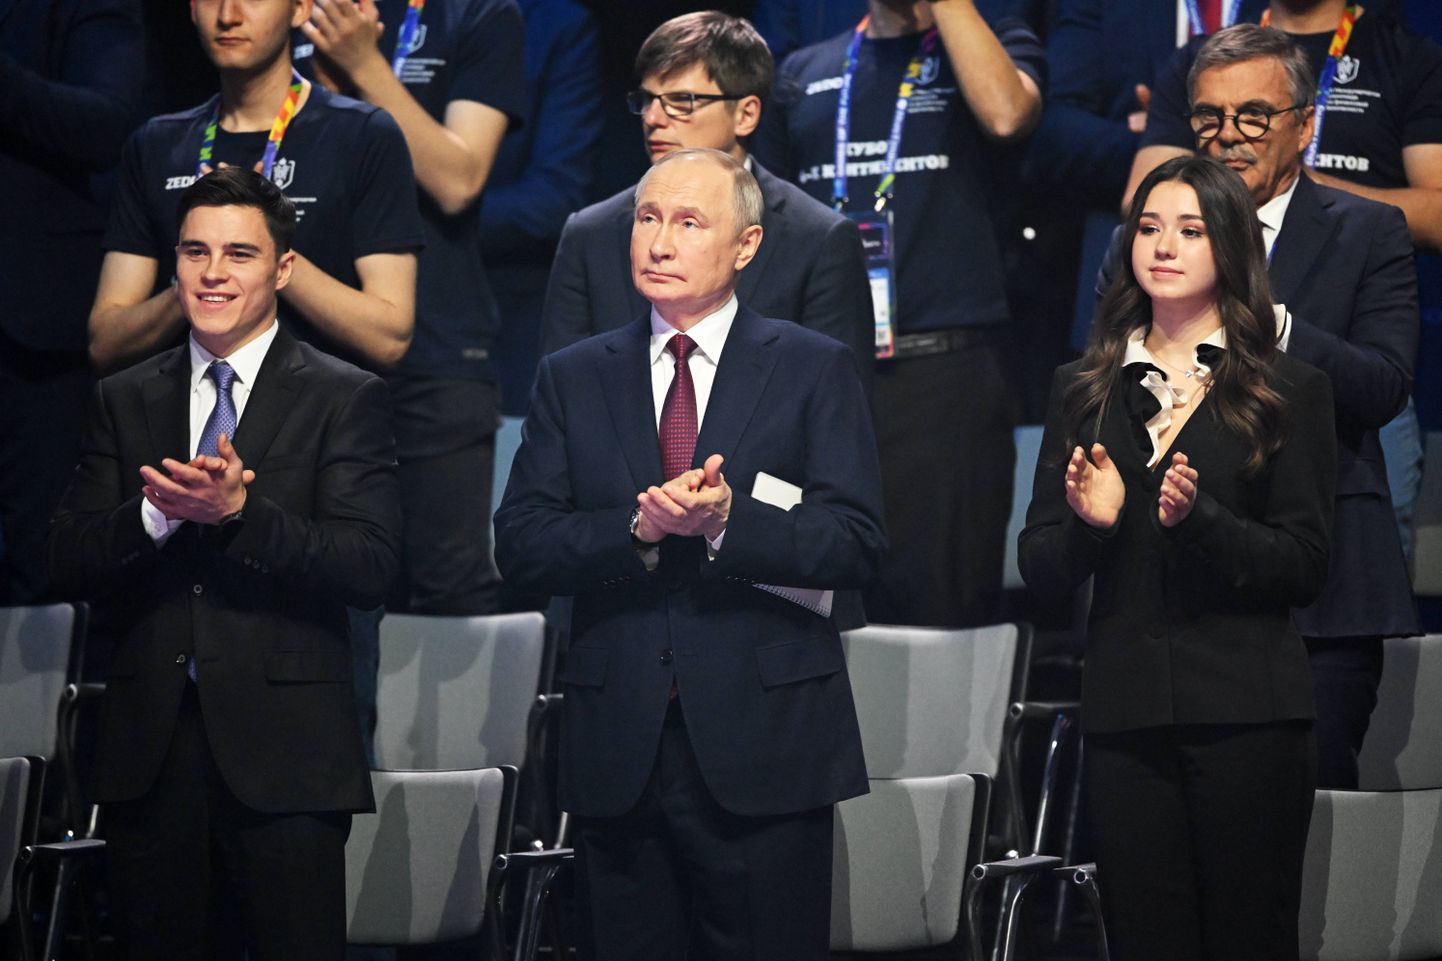 Камилу Валиеву (справа) усадили на церемонии открытия Игр будущего рядом с Владимиром Путиным.